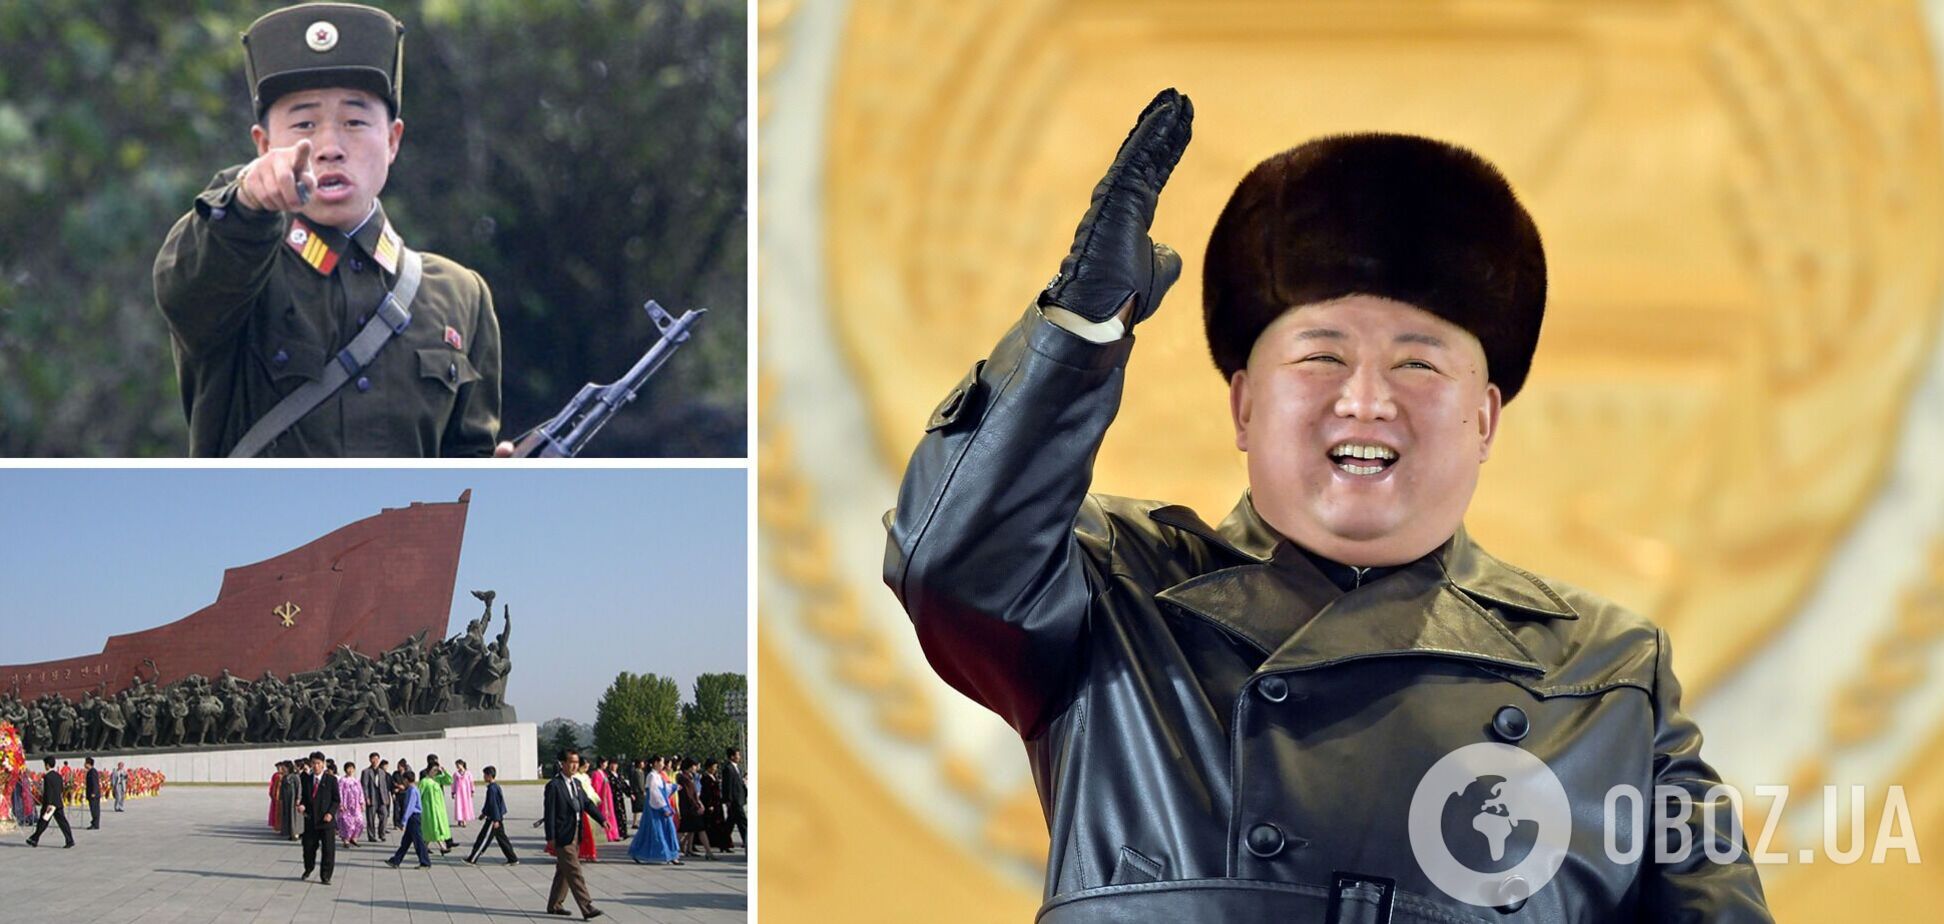 В КНДР запретили кожаные плащи, чтобы не копировать Ким Чен Ина: людей хватают прямо на улице